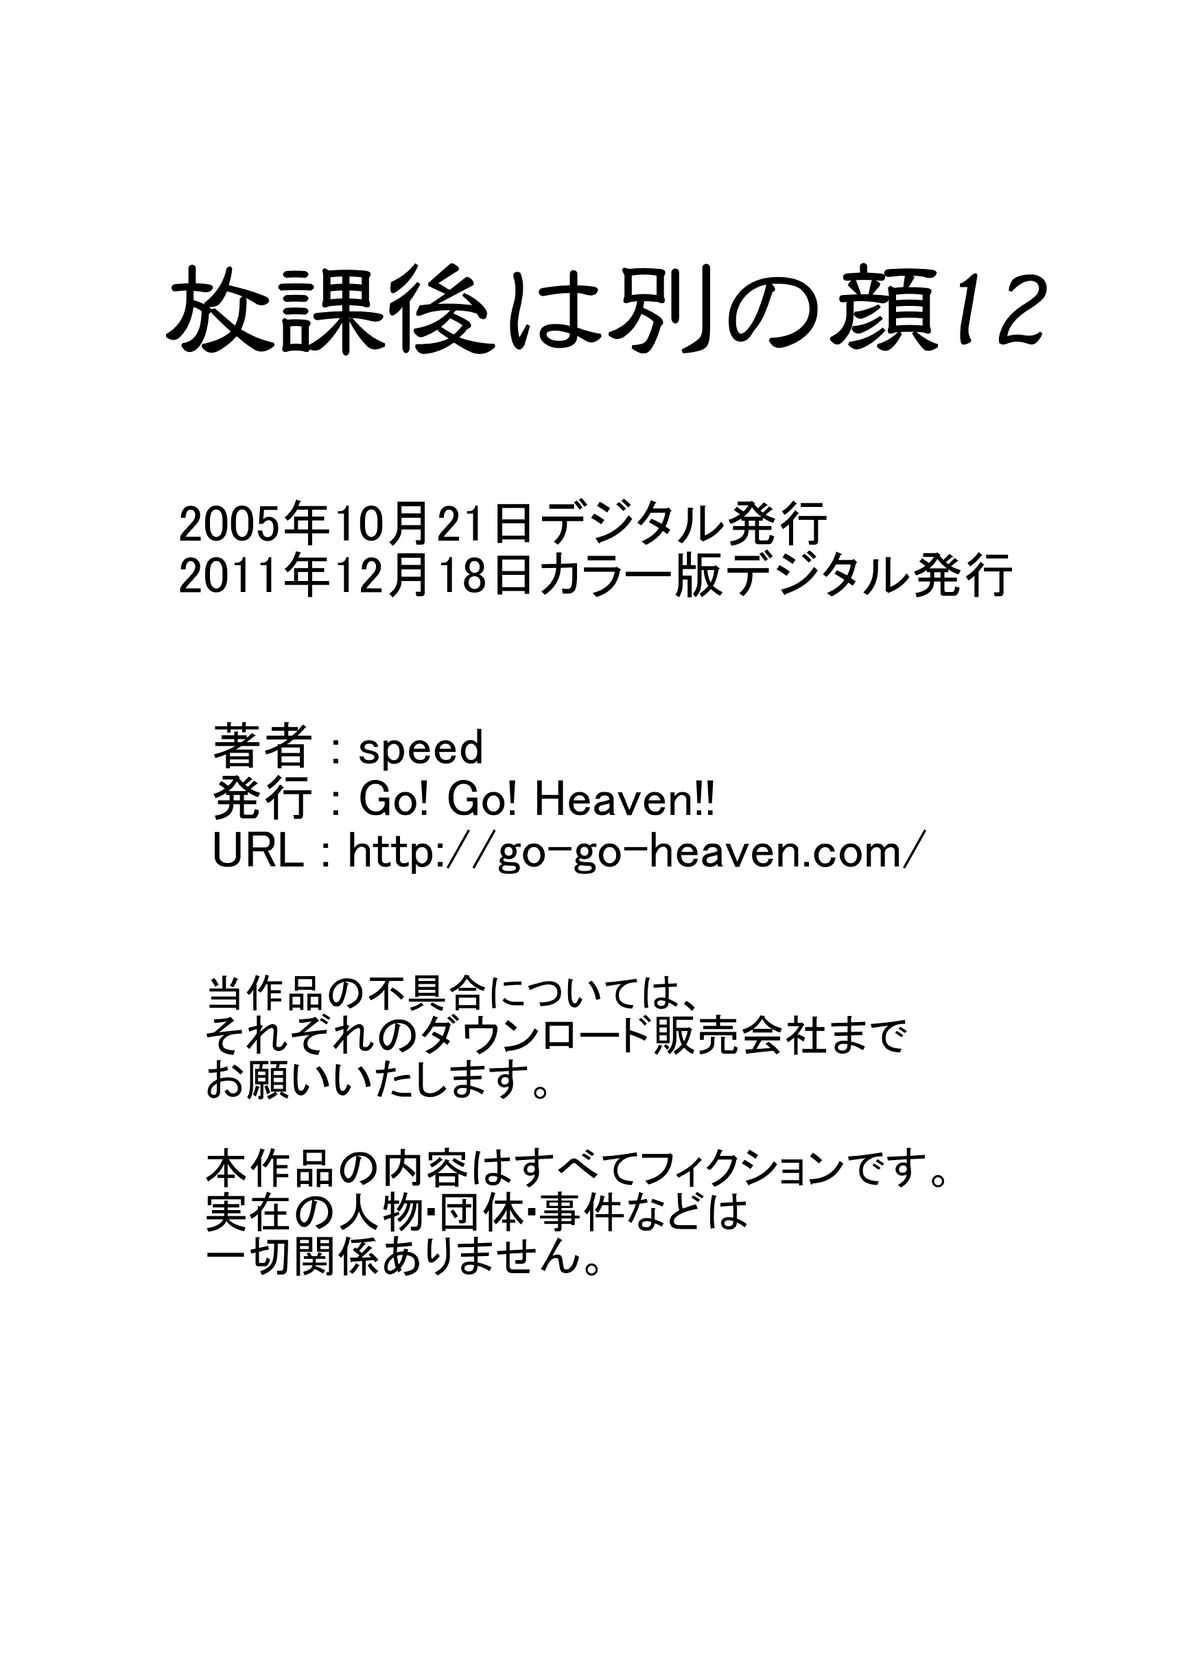 [Go! Go! Heaven!!] 放課後は別の顔12 カラー版 